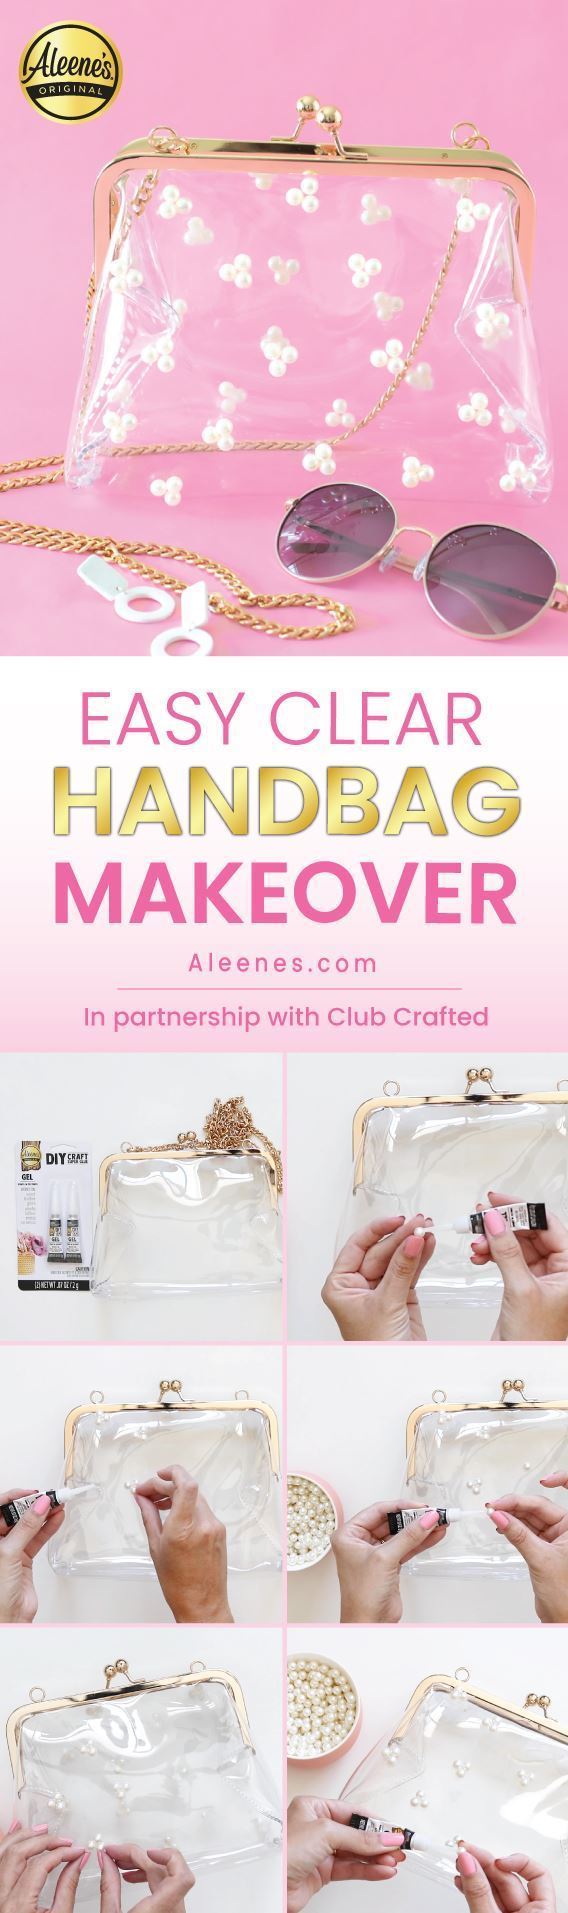 Aleene's Original Glues - Easy Clear Handbag Makeover